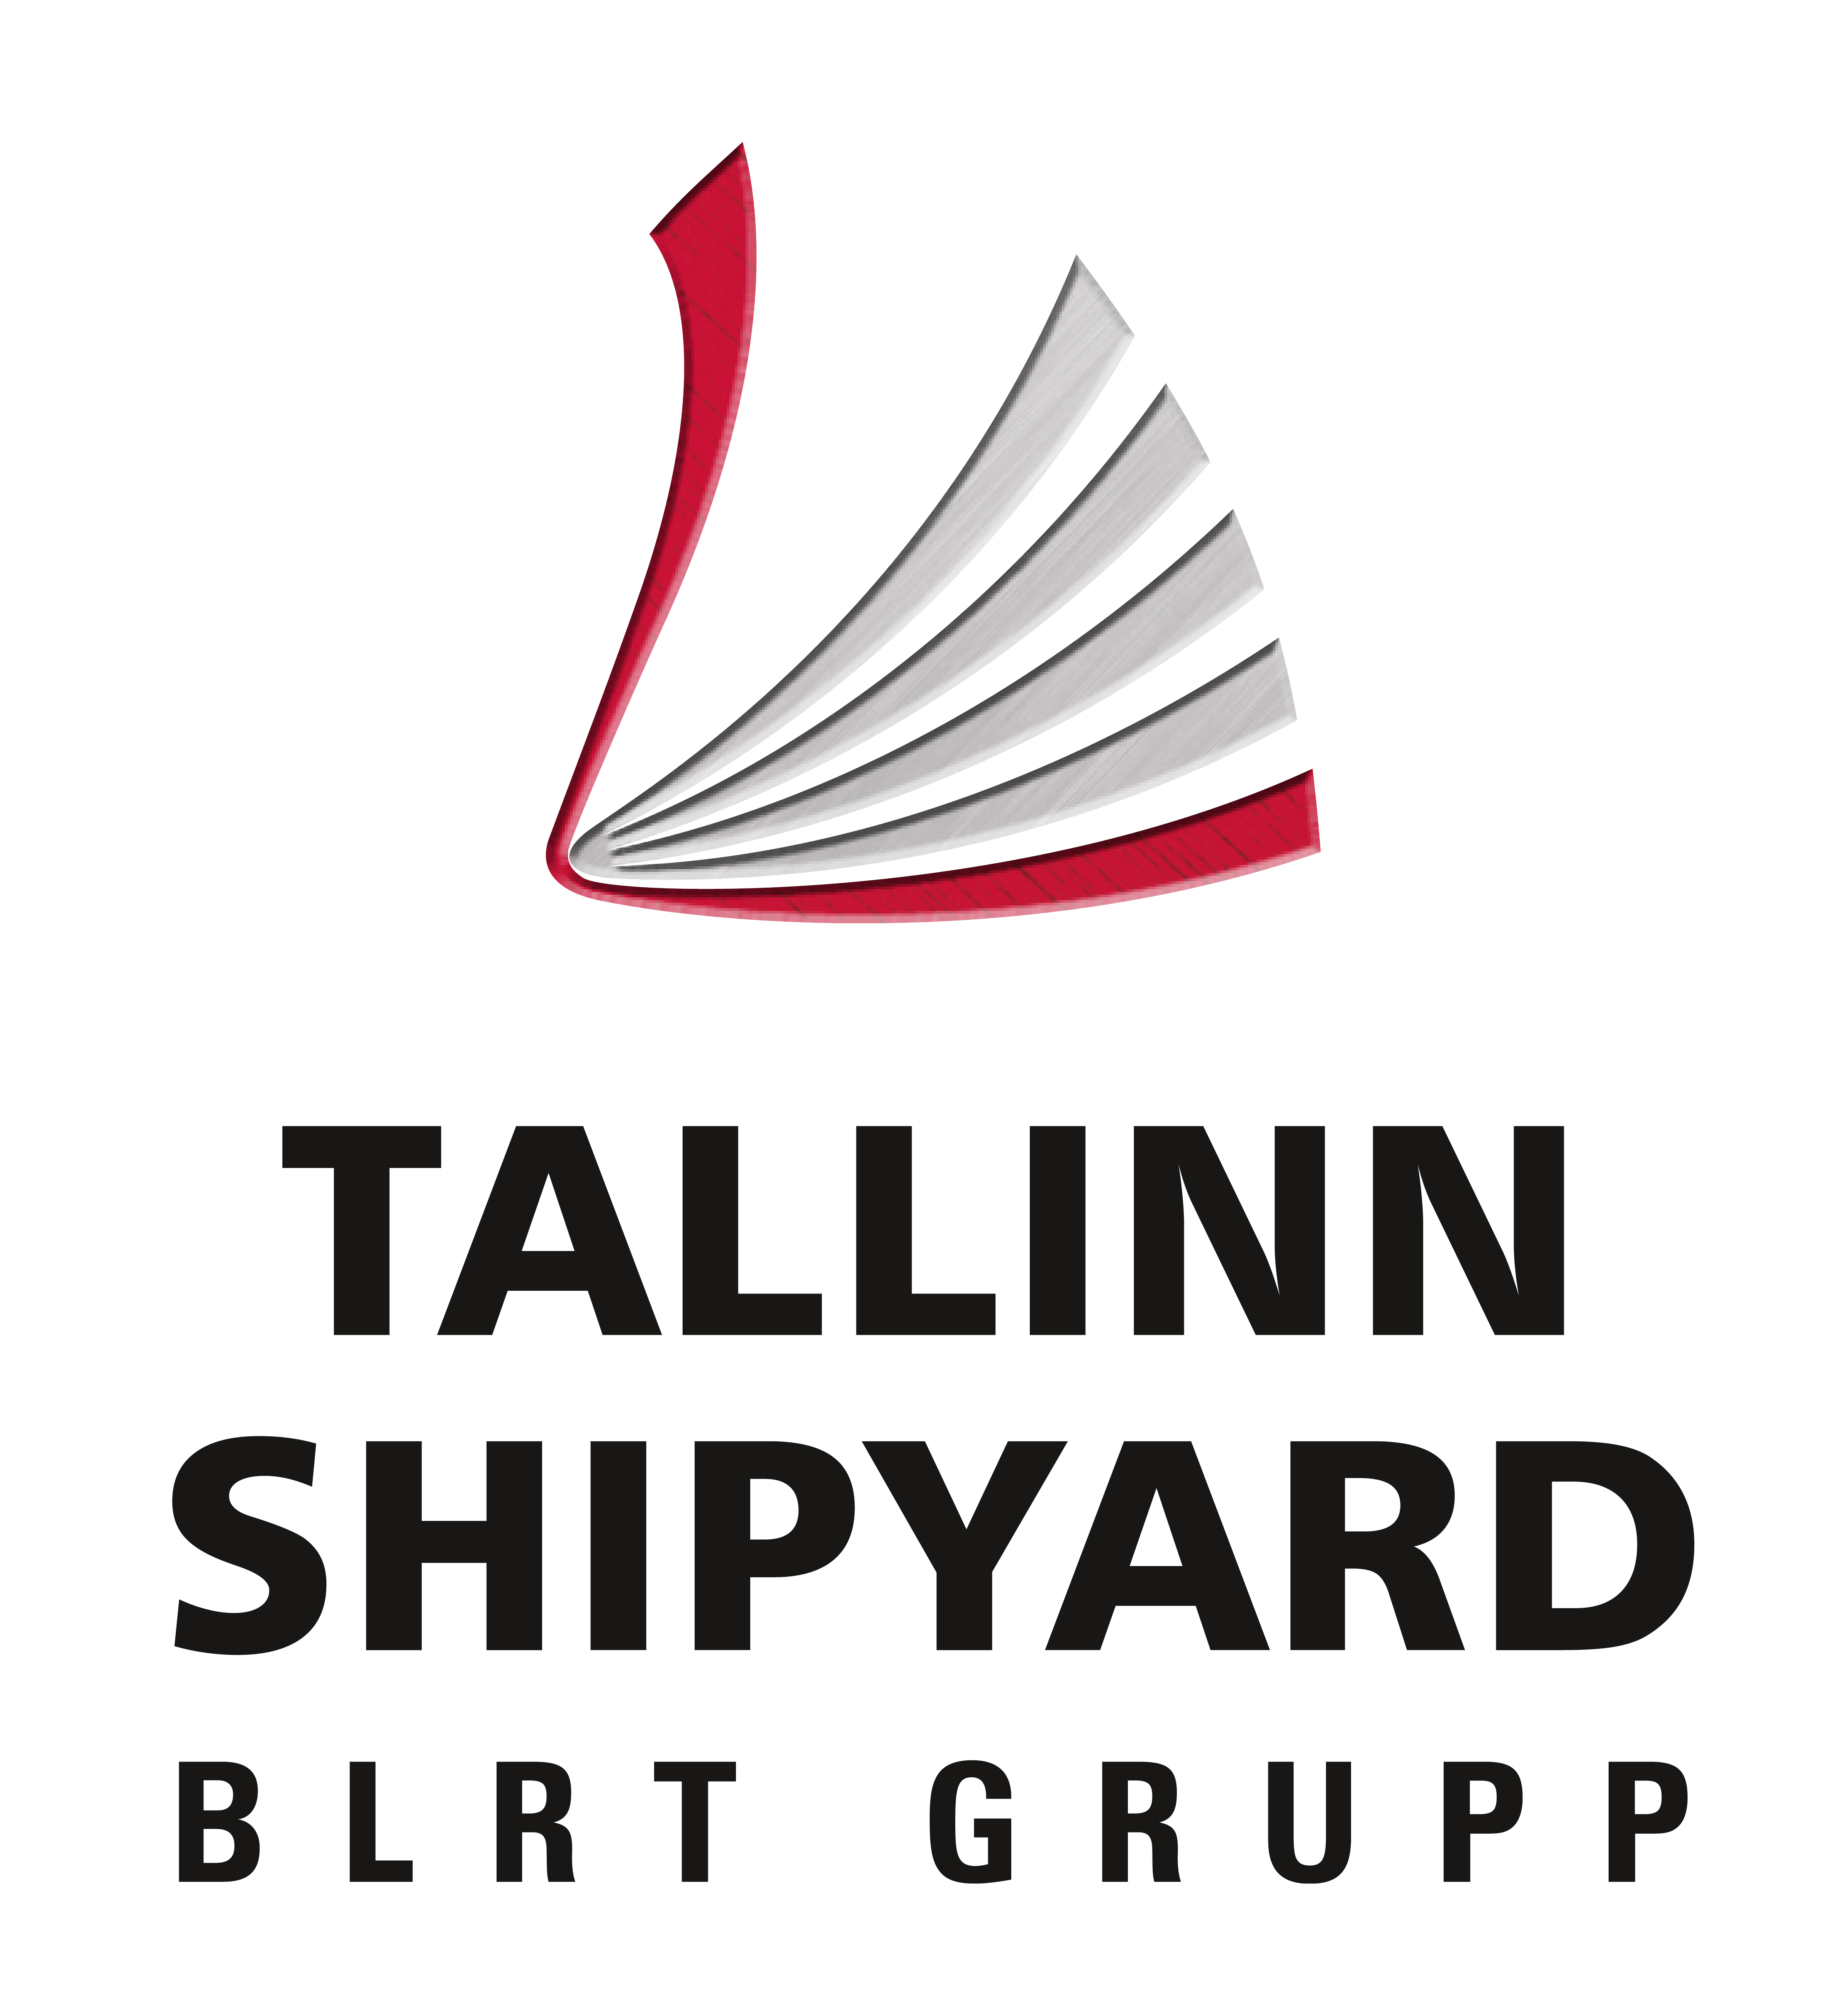 TALLINN SHIPYARD